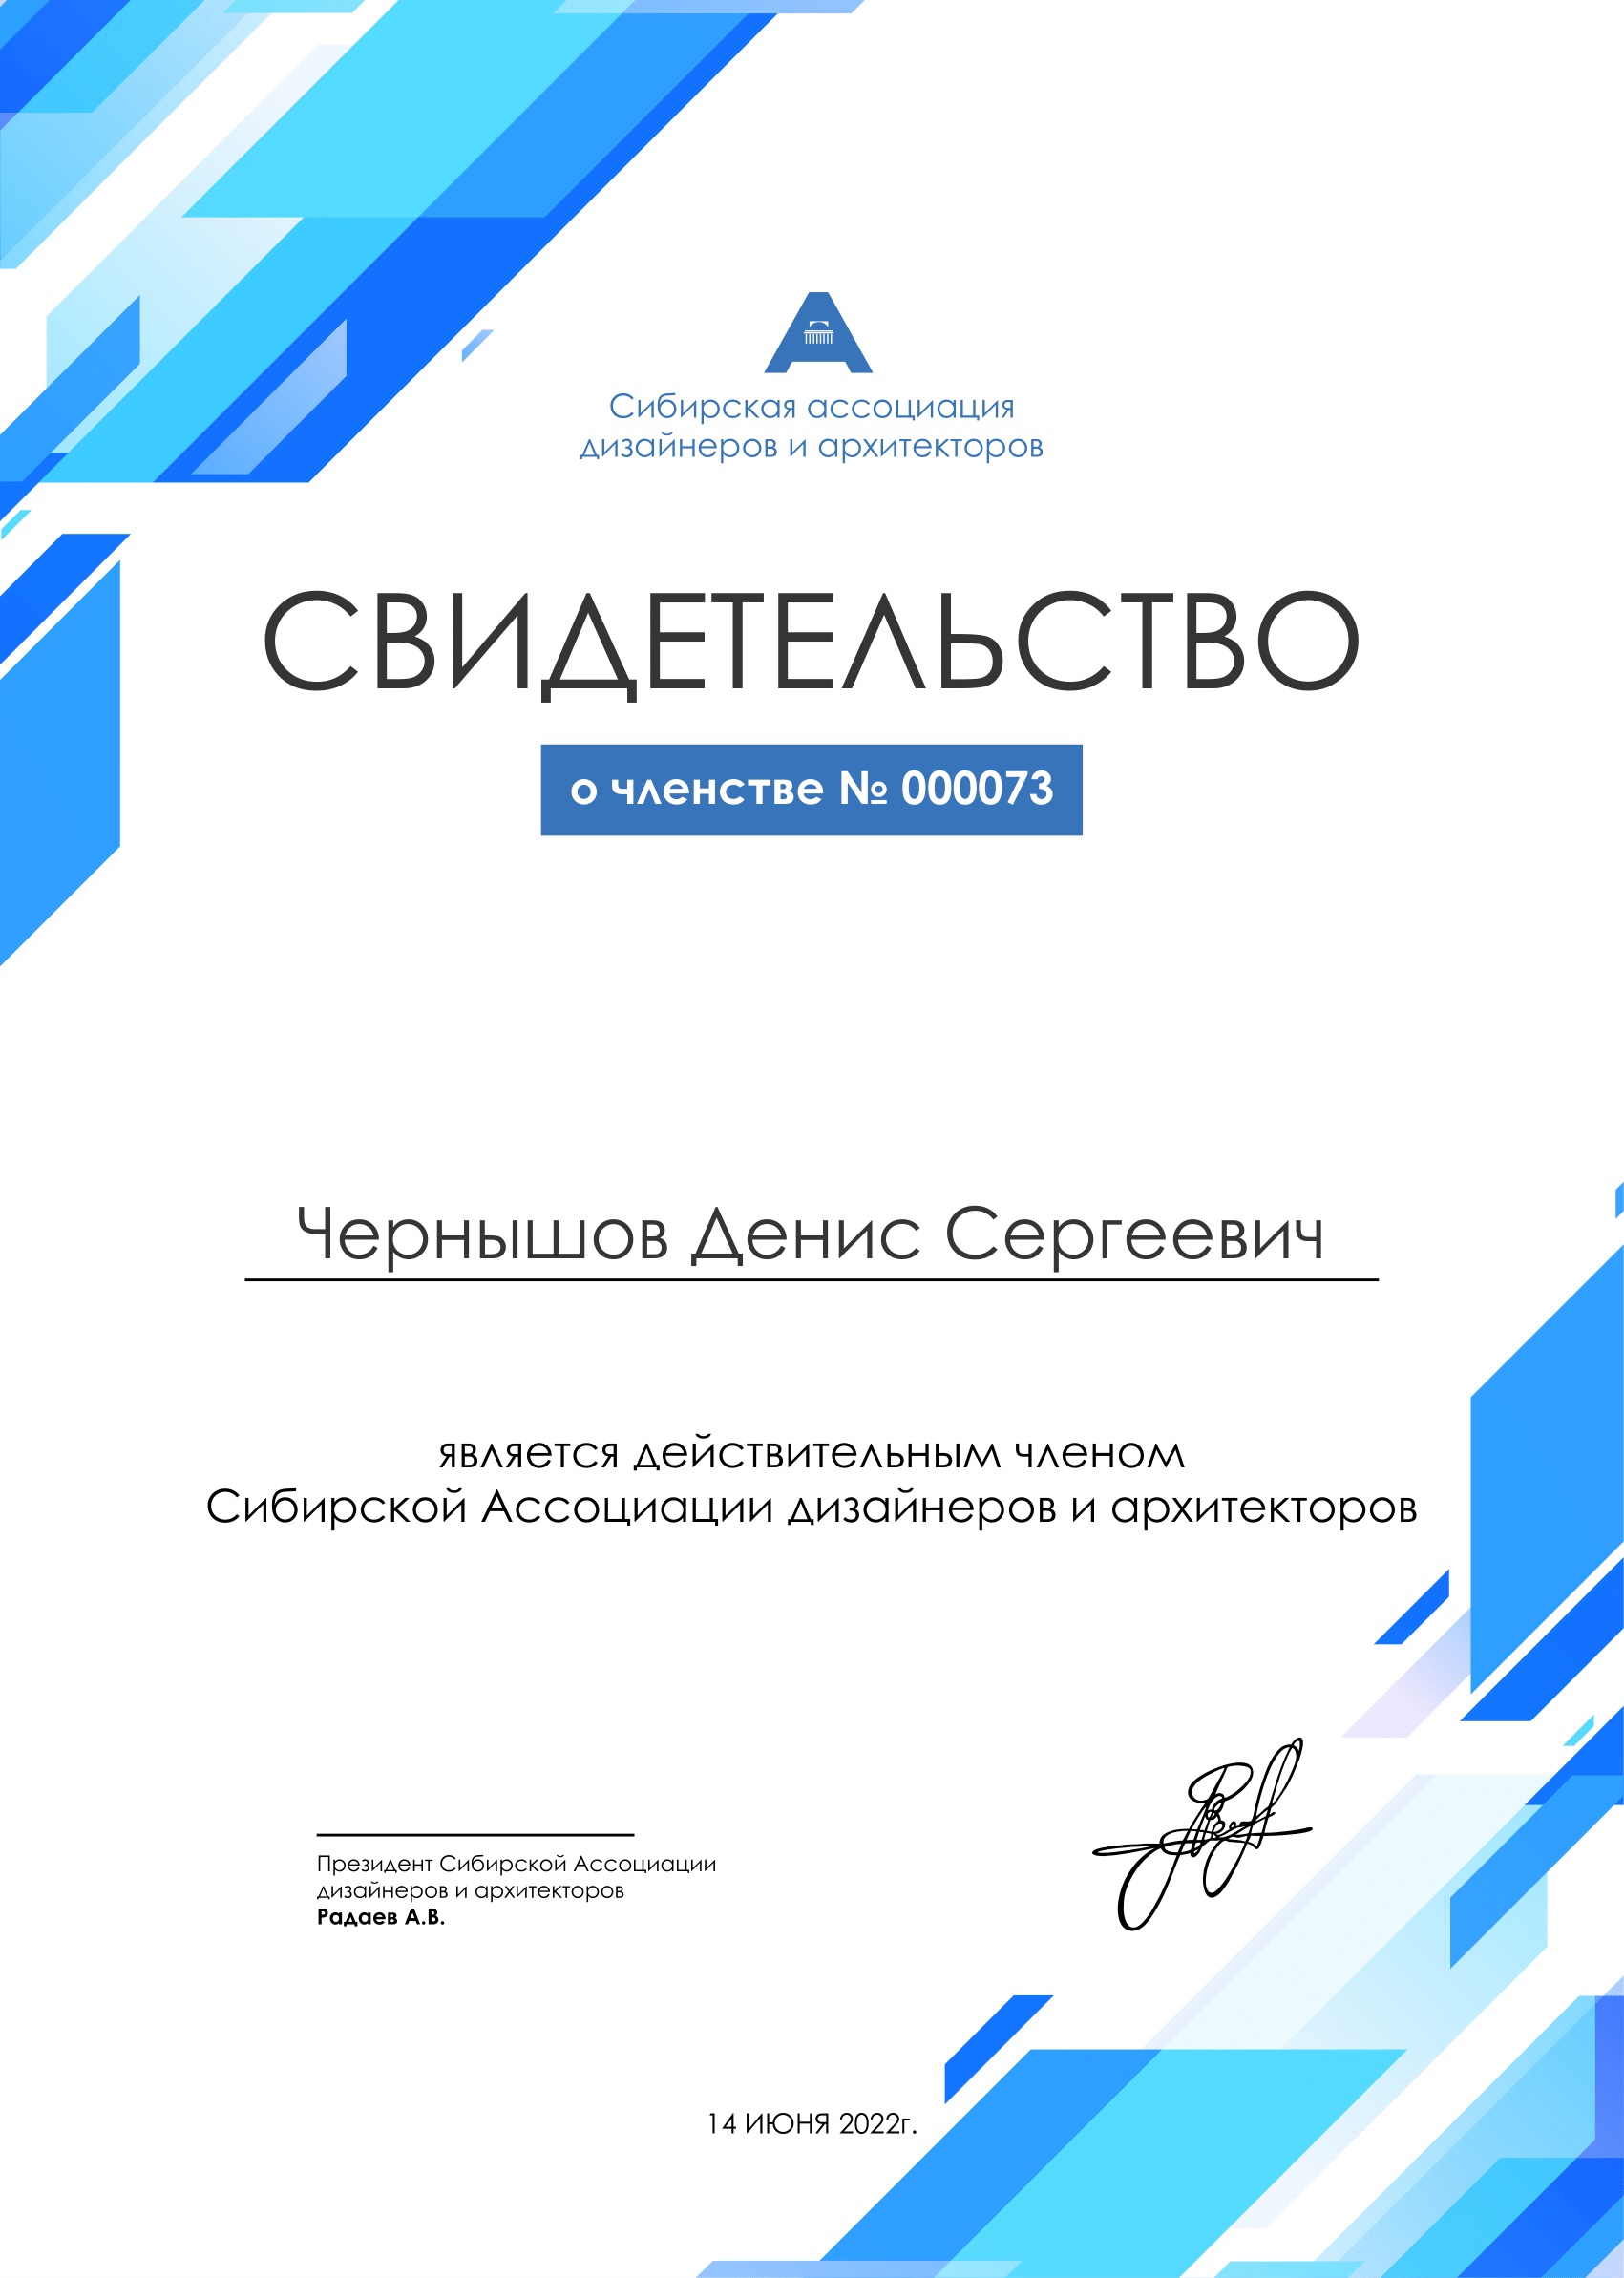 Мы официально вступили в Сибирскую ассоциацию дизайнеров и архитекторов!